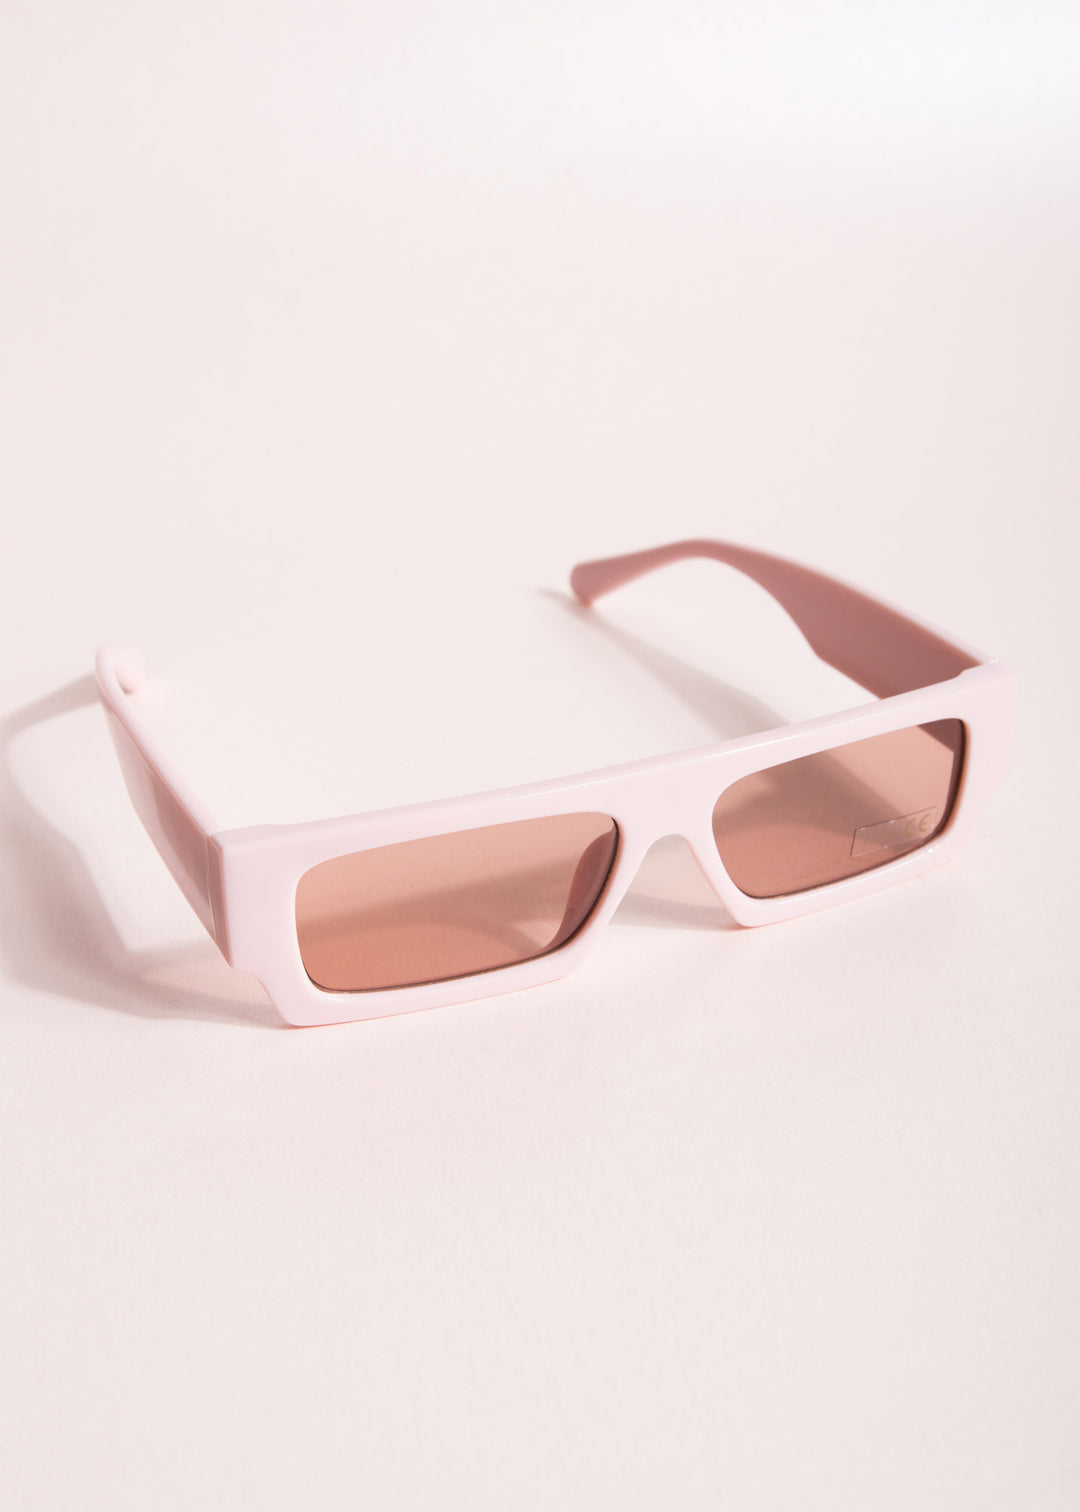 Gafas de sol matrix soft pink